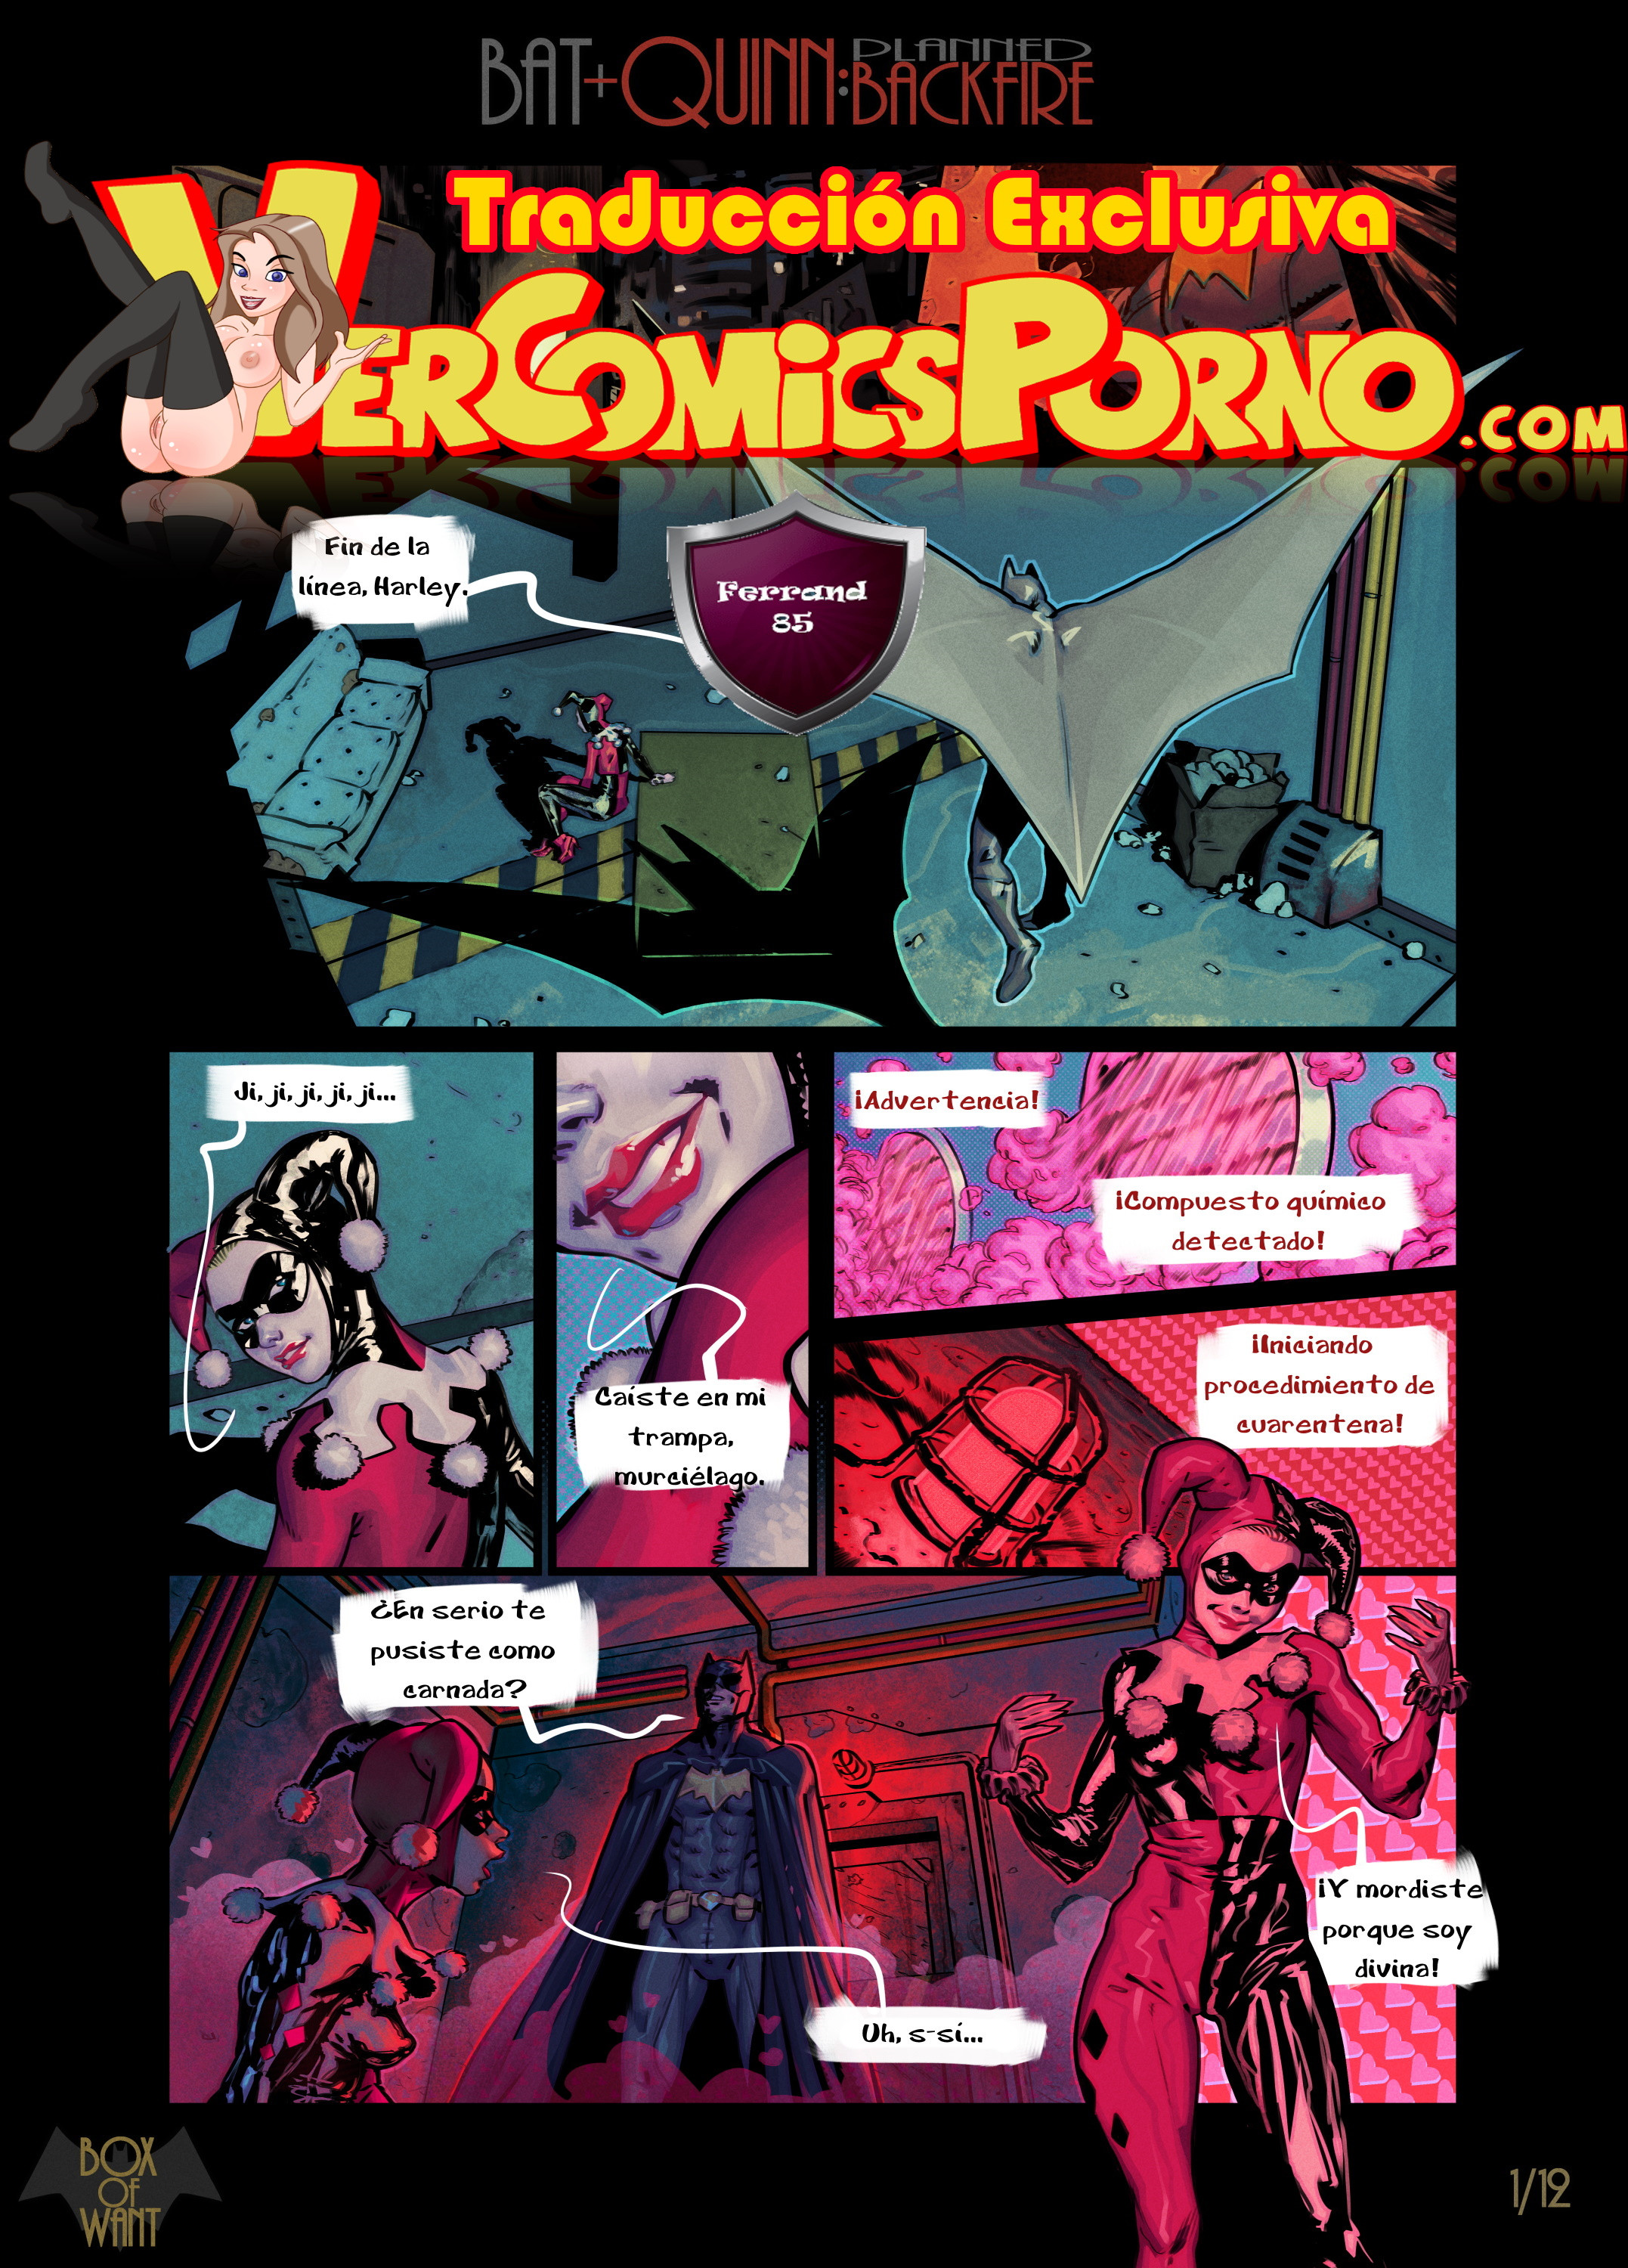 Harly Batgirl And Batman Porn Comic - Batman y Harley Quinn: Fantasias de una noche - Vercomicsporno